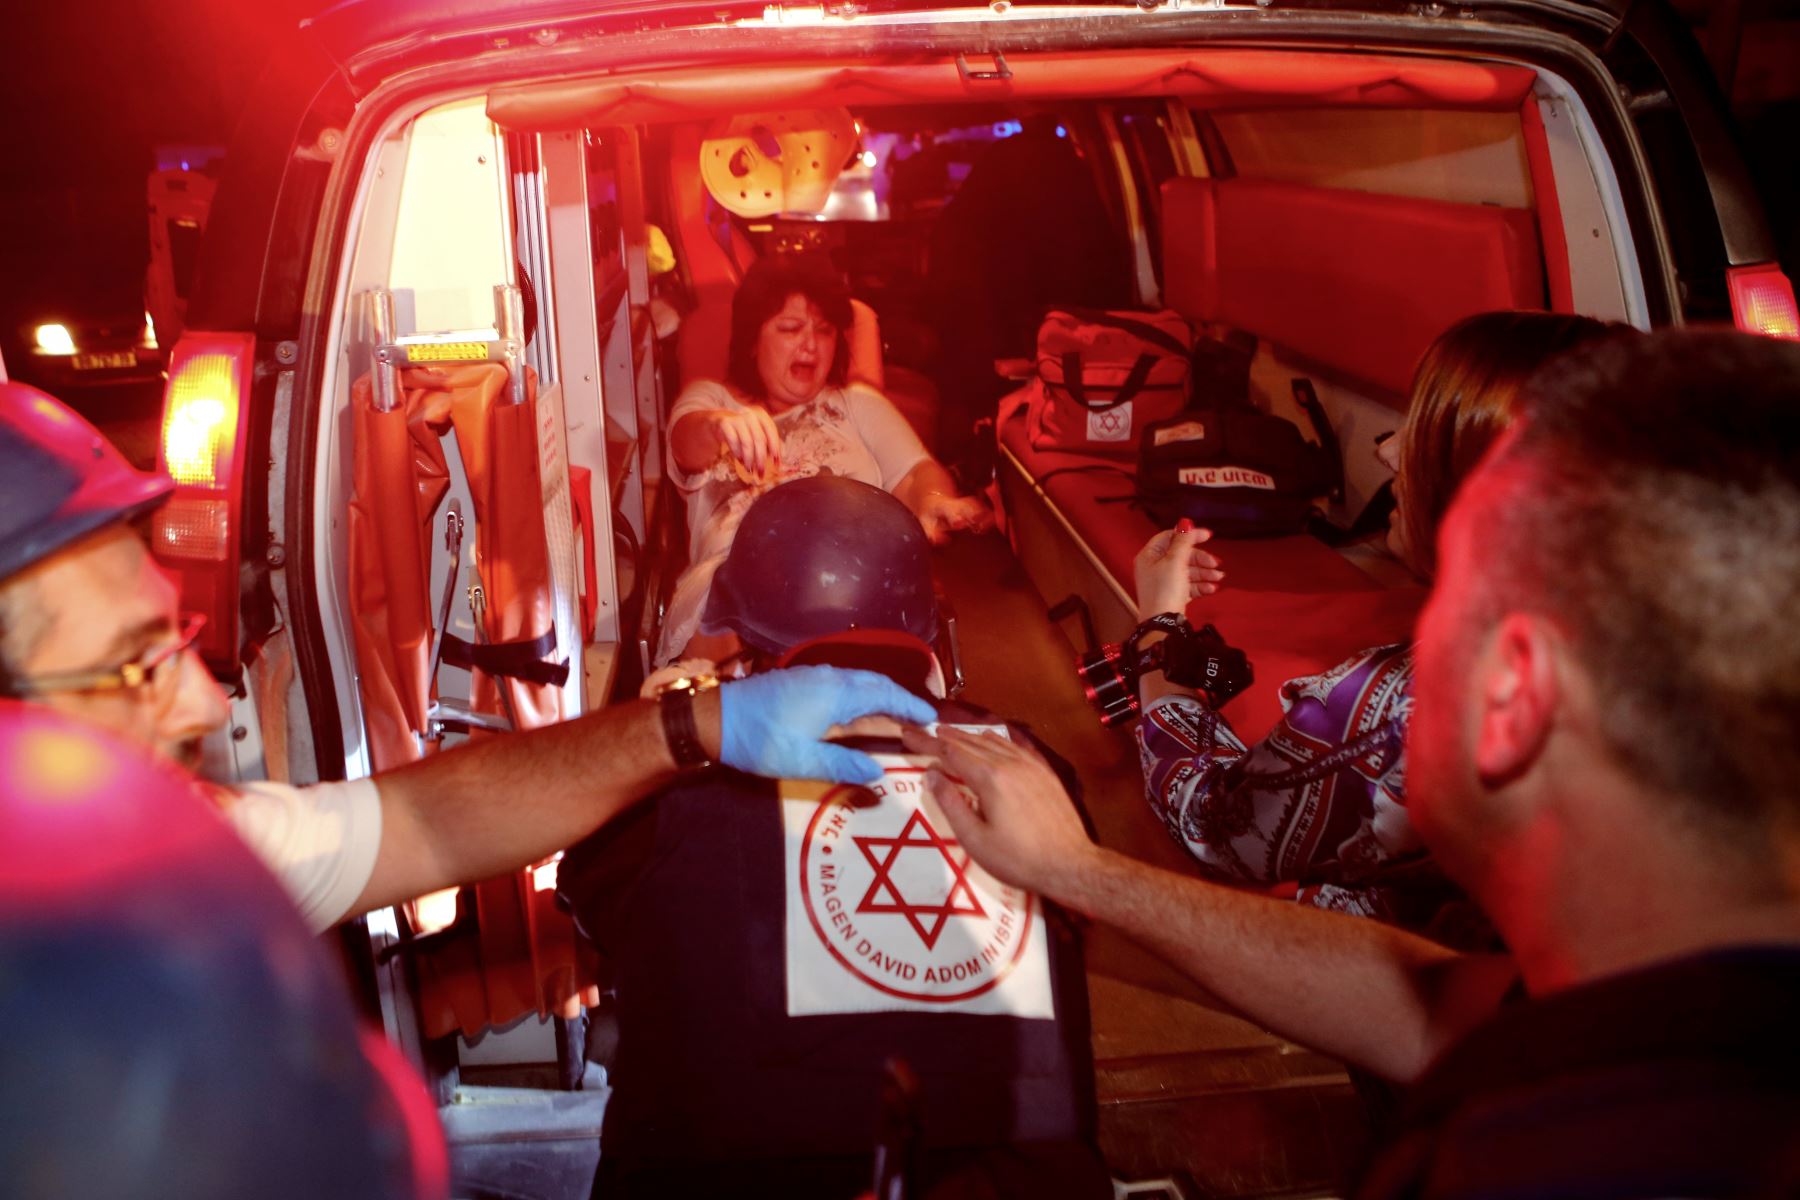 Una mujer israelí lesionada, evacuada de su apartamento que fue incendiada luego de ser golpeada por un cohete disparado desde la Franja de Gaza, llega al hospital en una ambulancia, en la ciudad israelí de Ashkelon. Israel El ejército dijo que estaba llevando a cabo ataques aéreos "a lo largo de la Franja de Gaza" después del lanzamiento de cohetes desde el enclave palestino hacia su territorio. AFP